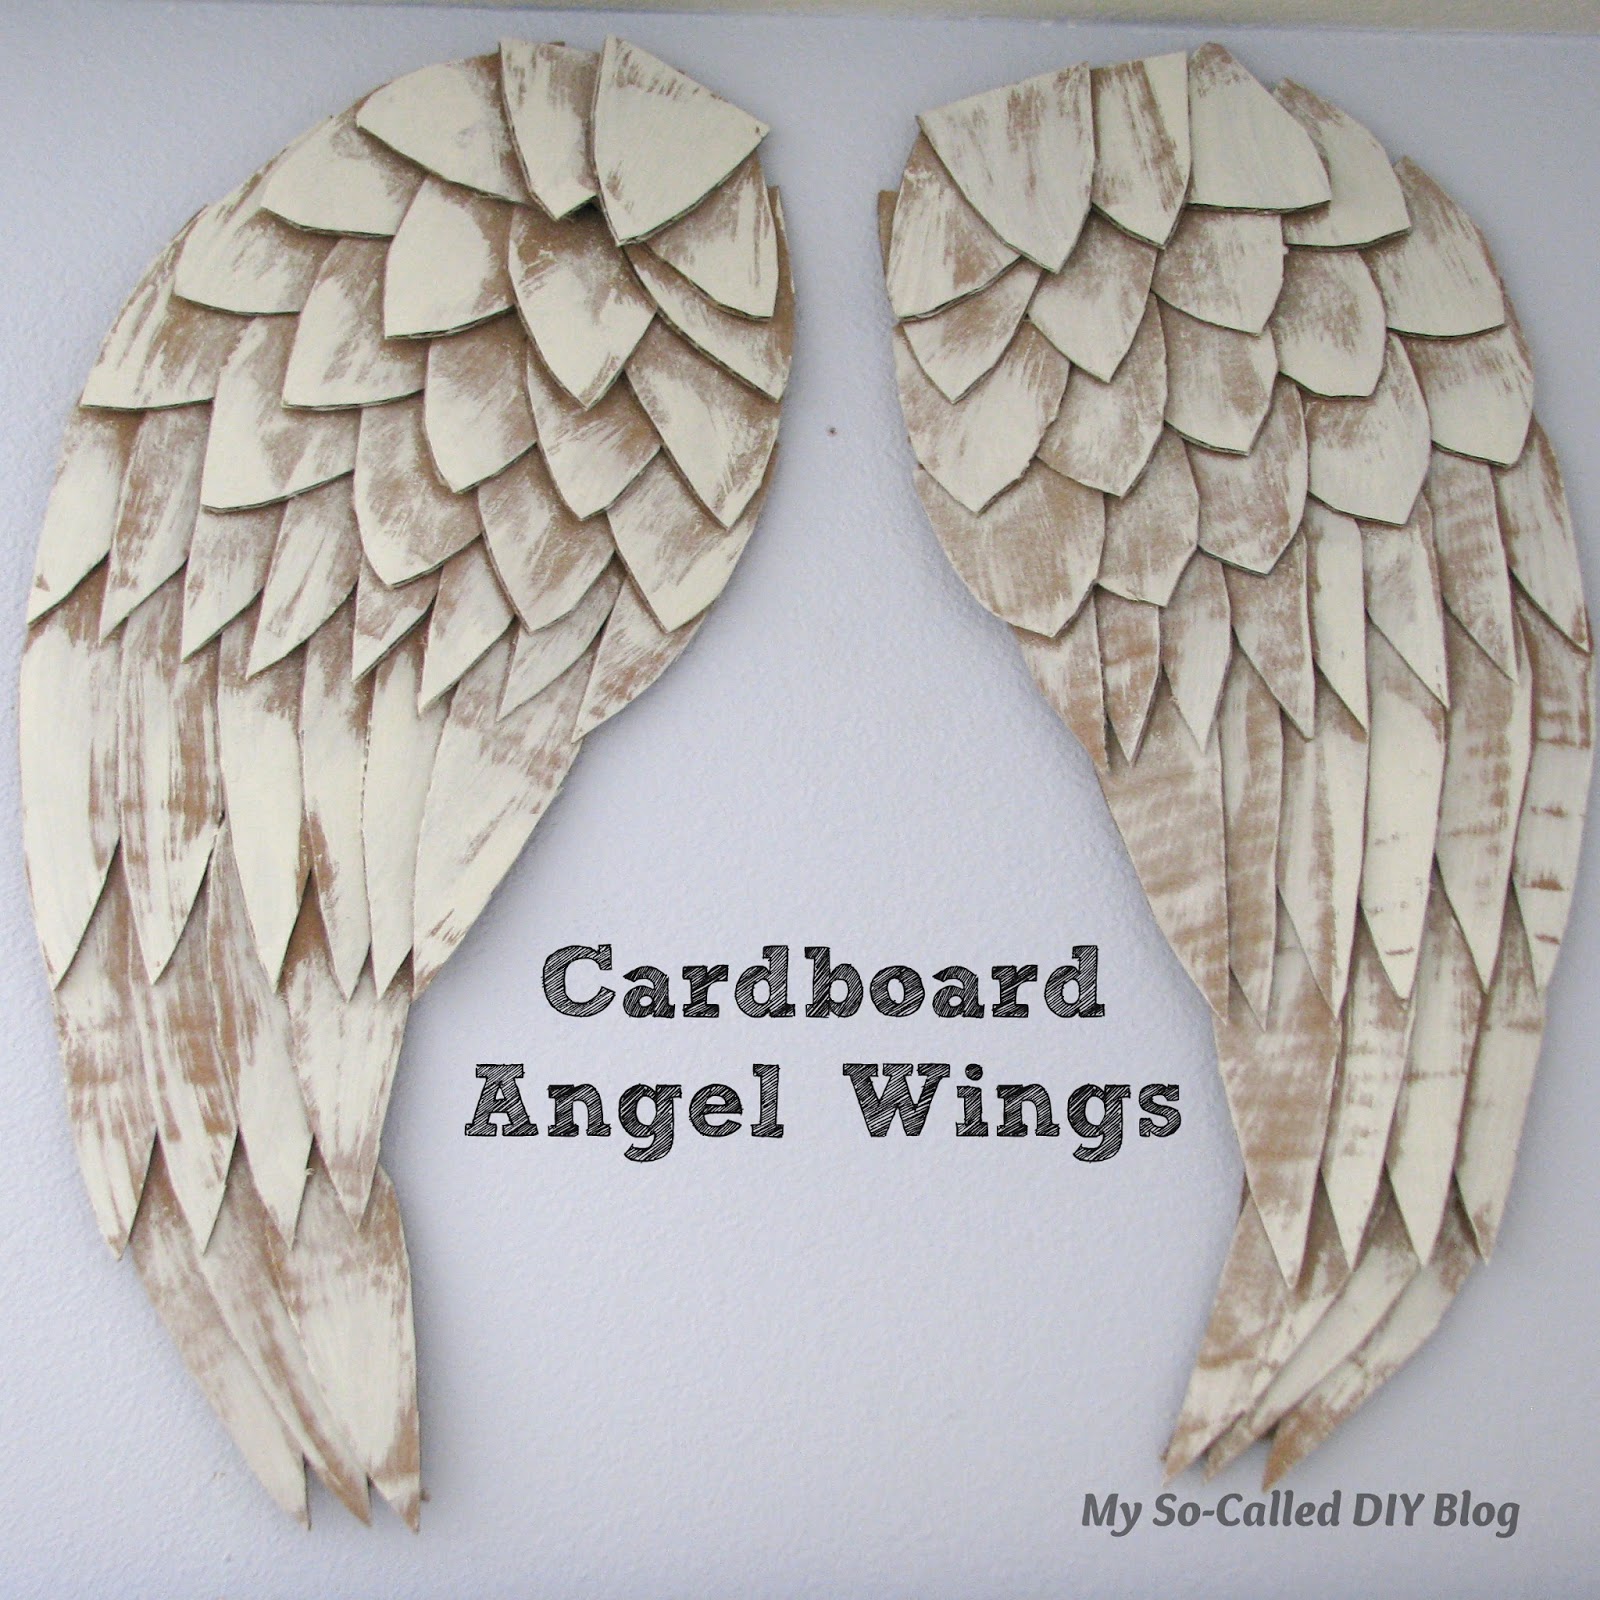 My So-Called DIY Blog: Angel Wings From Cardboard